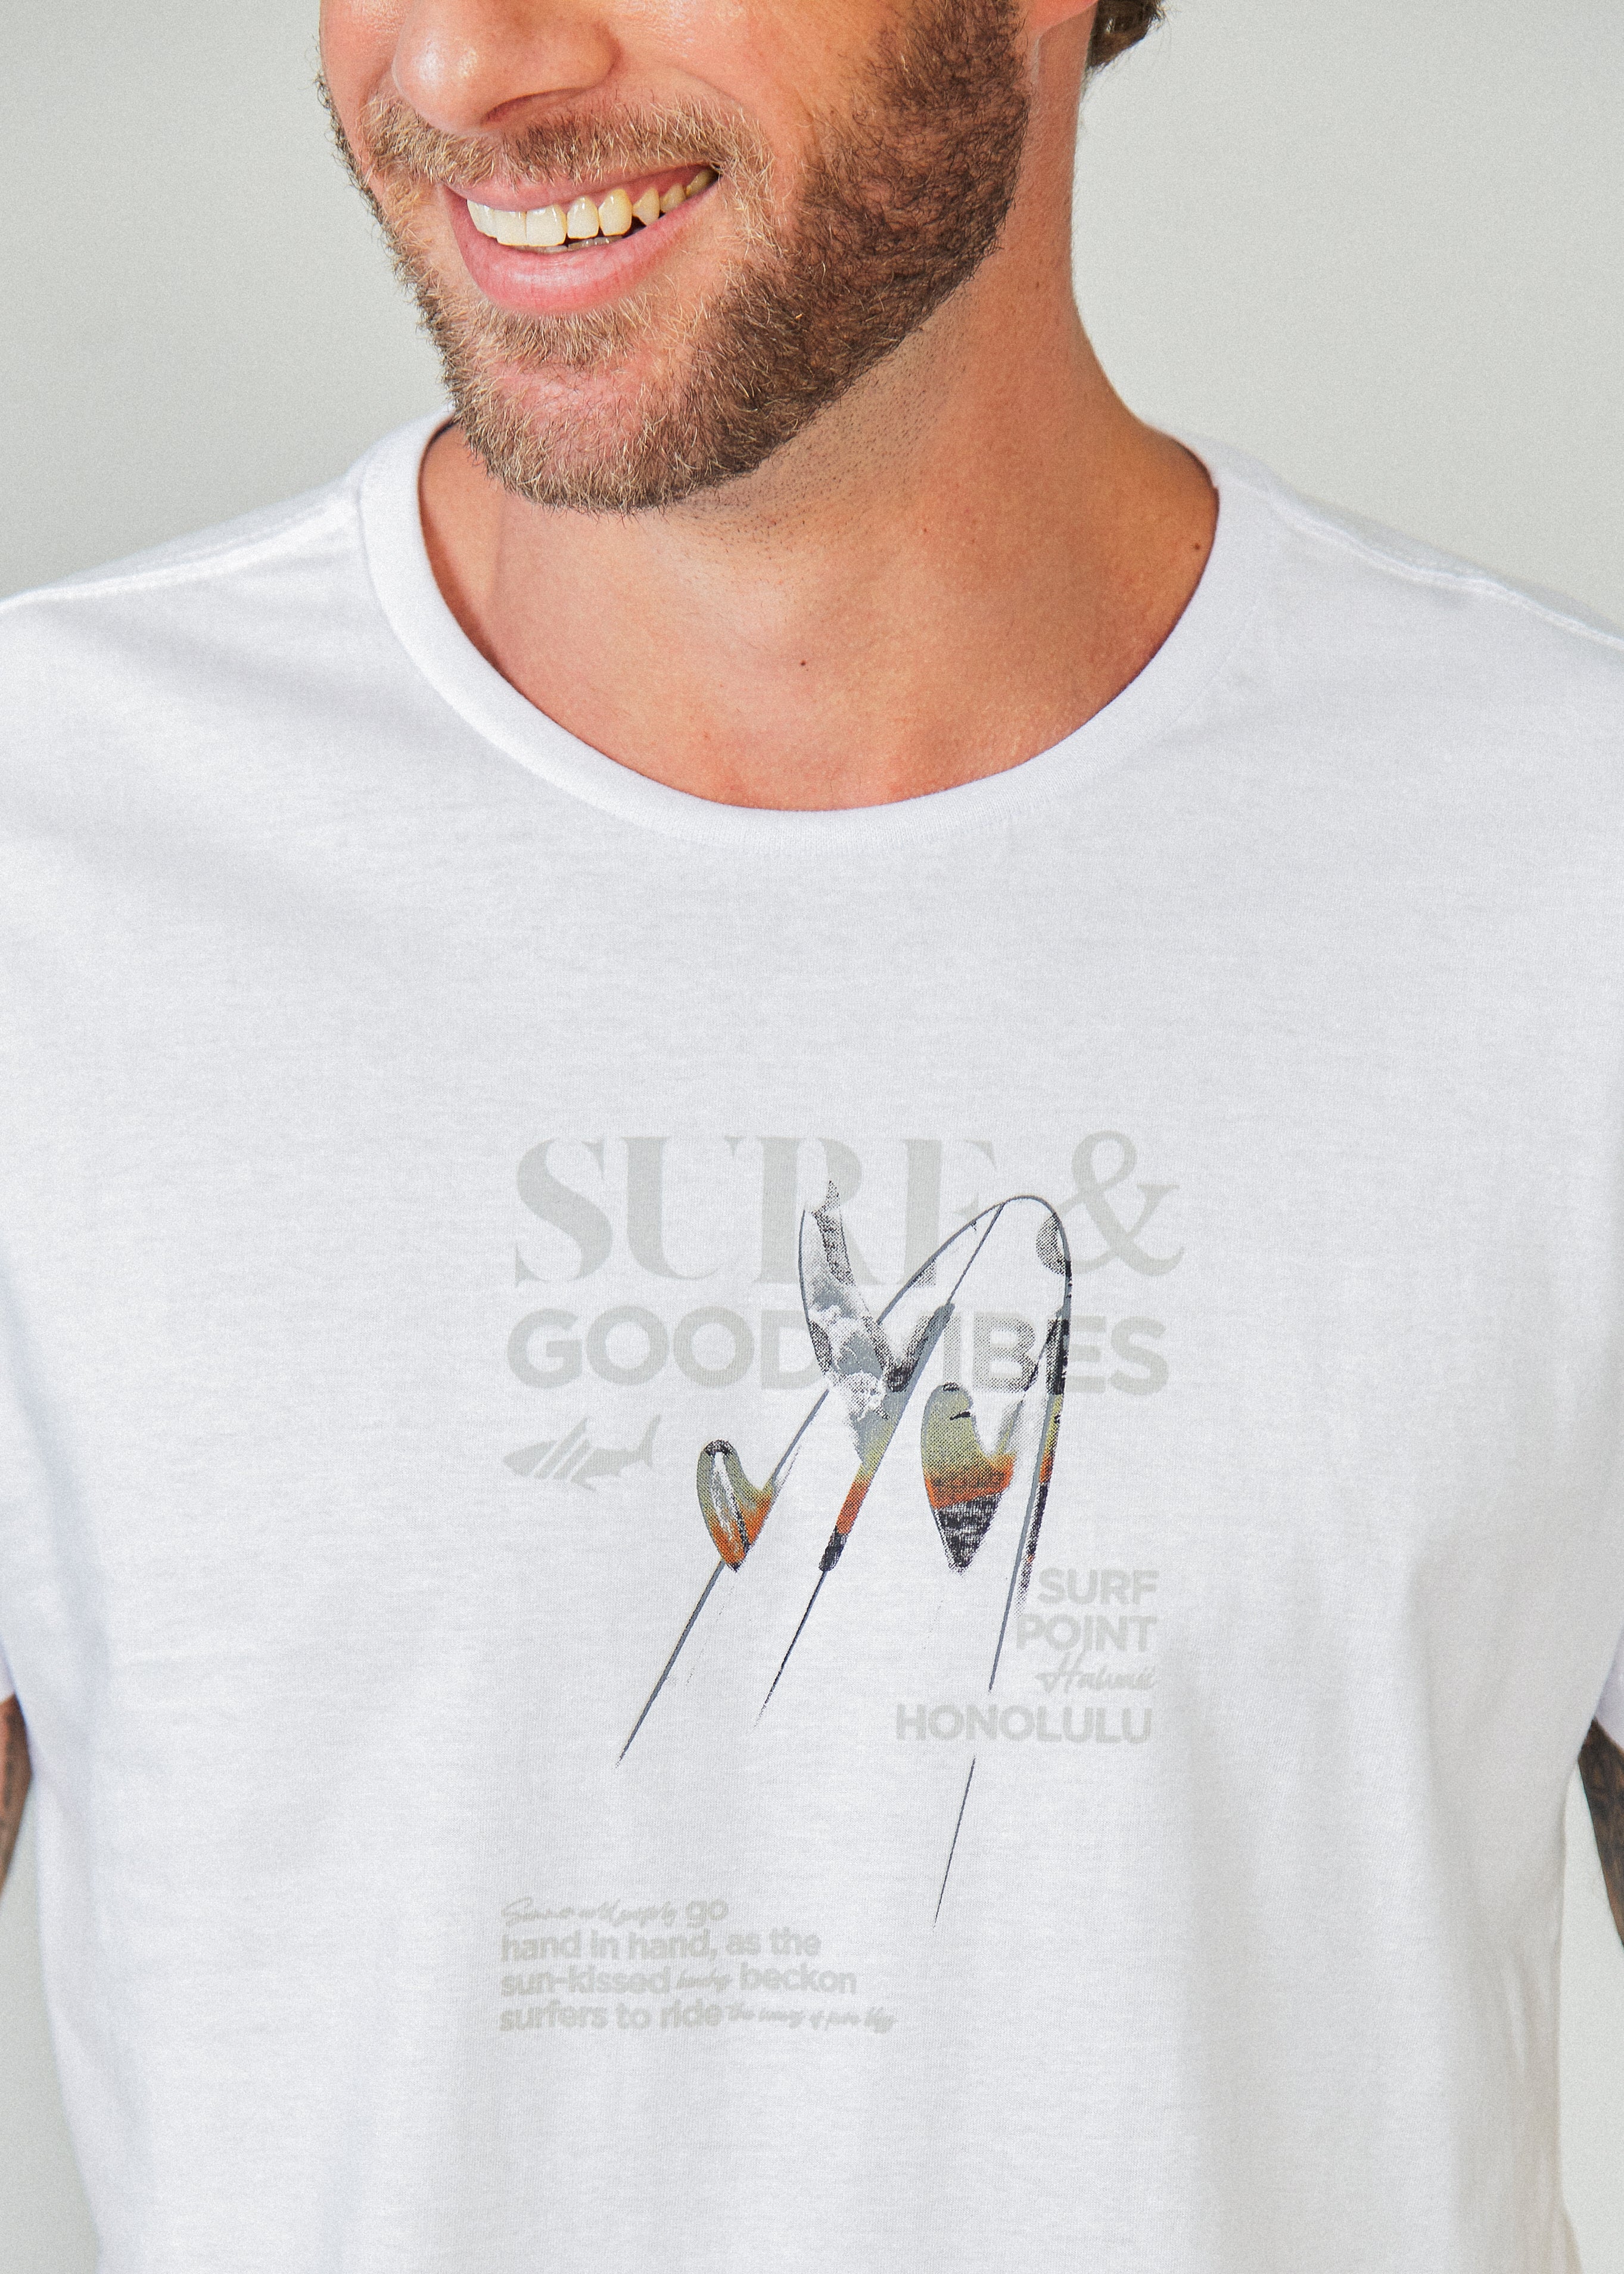 Camiseta Estampada Good Vibes - Branca